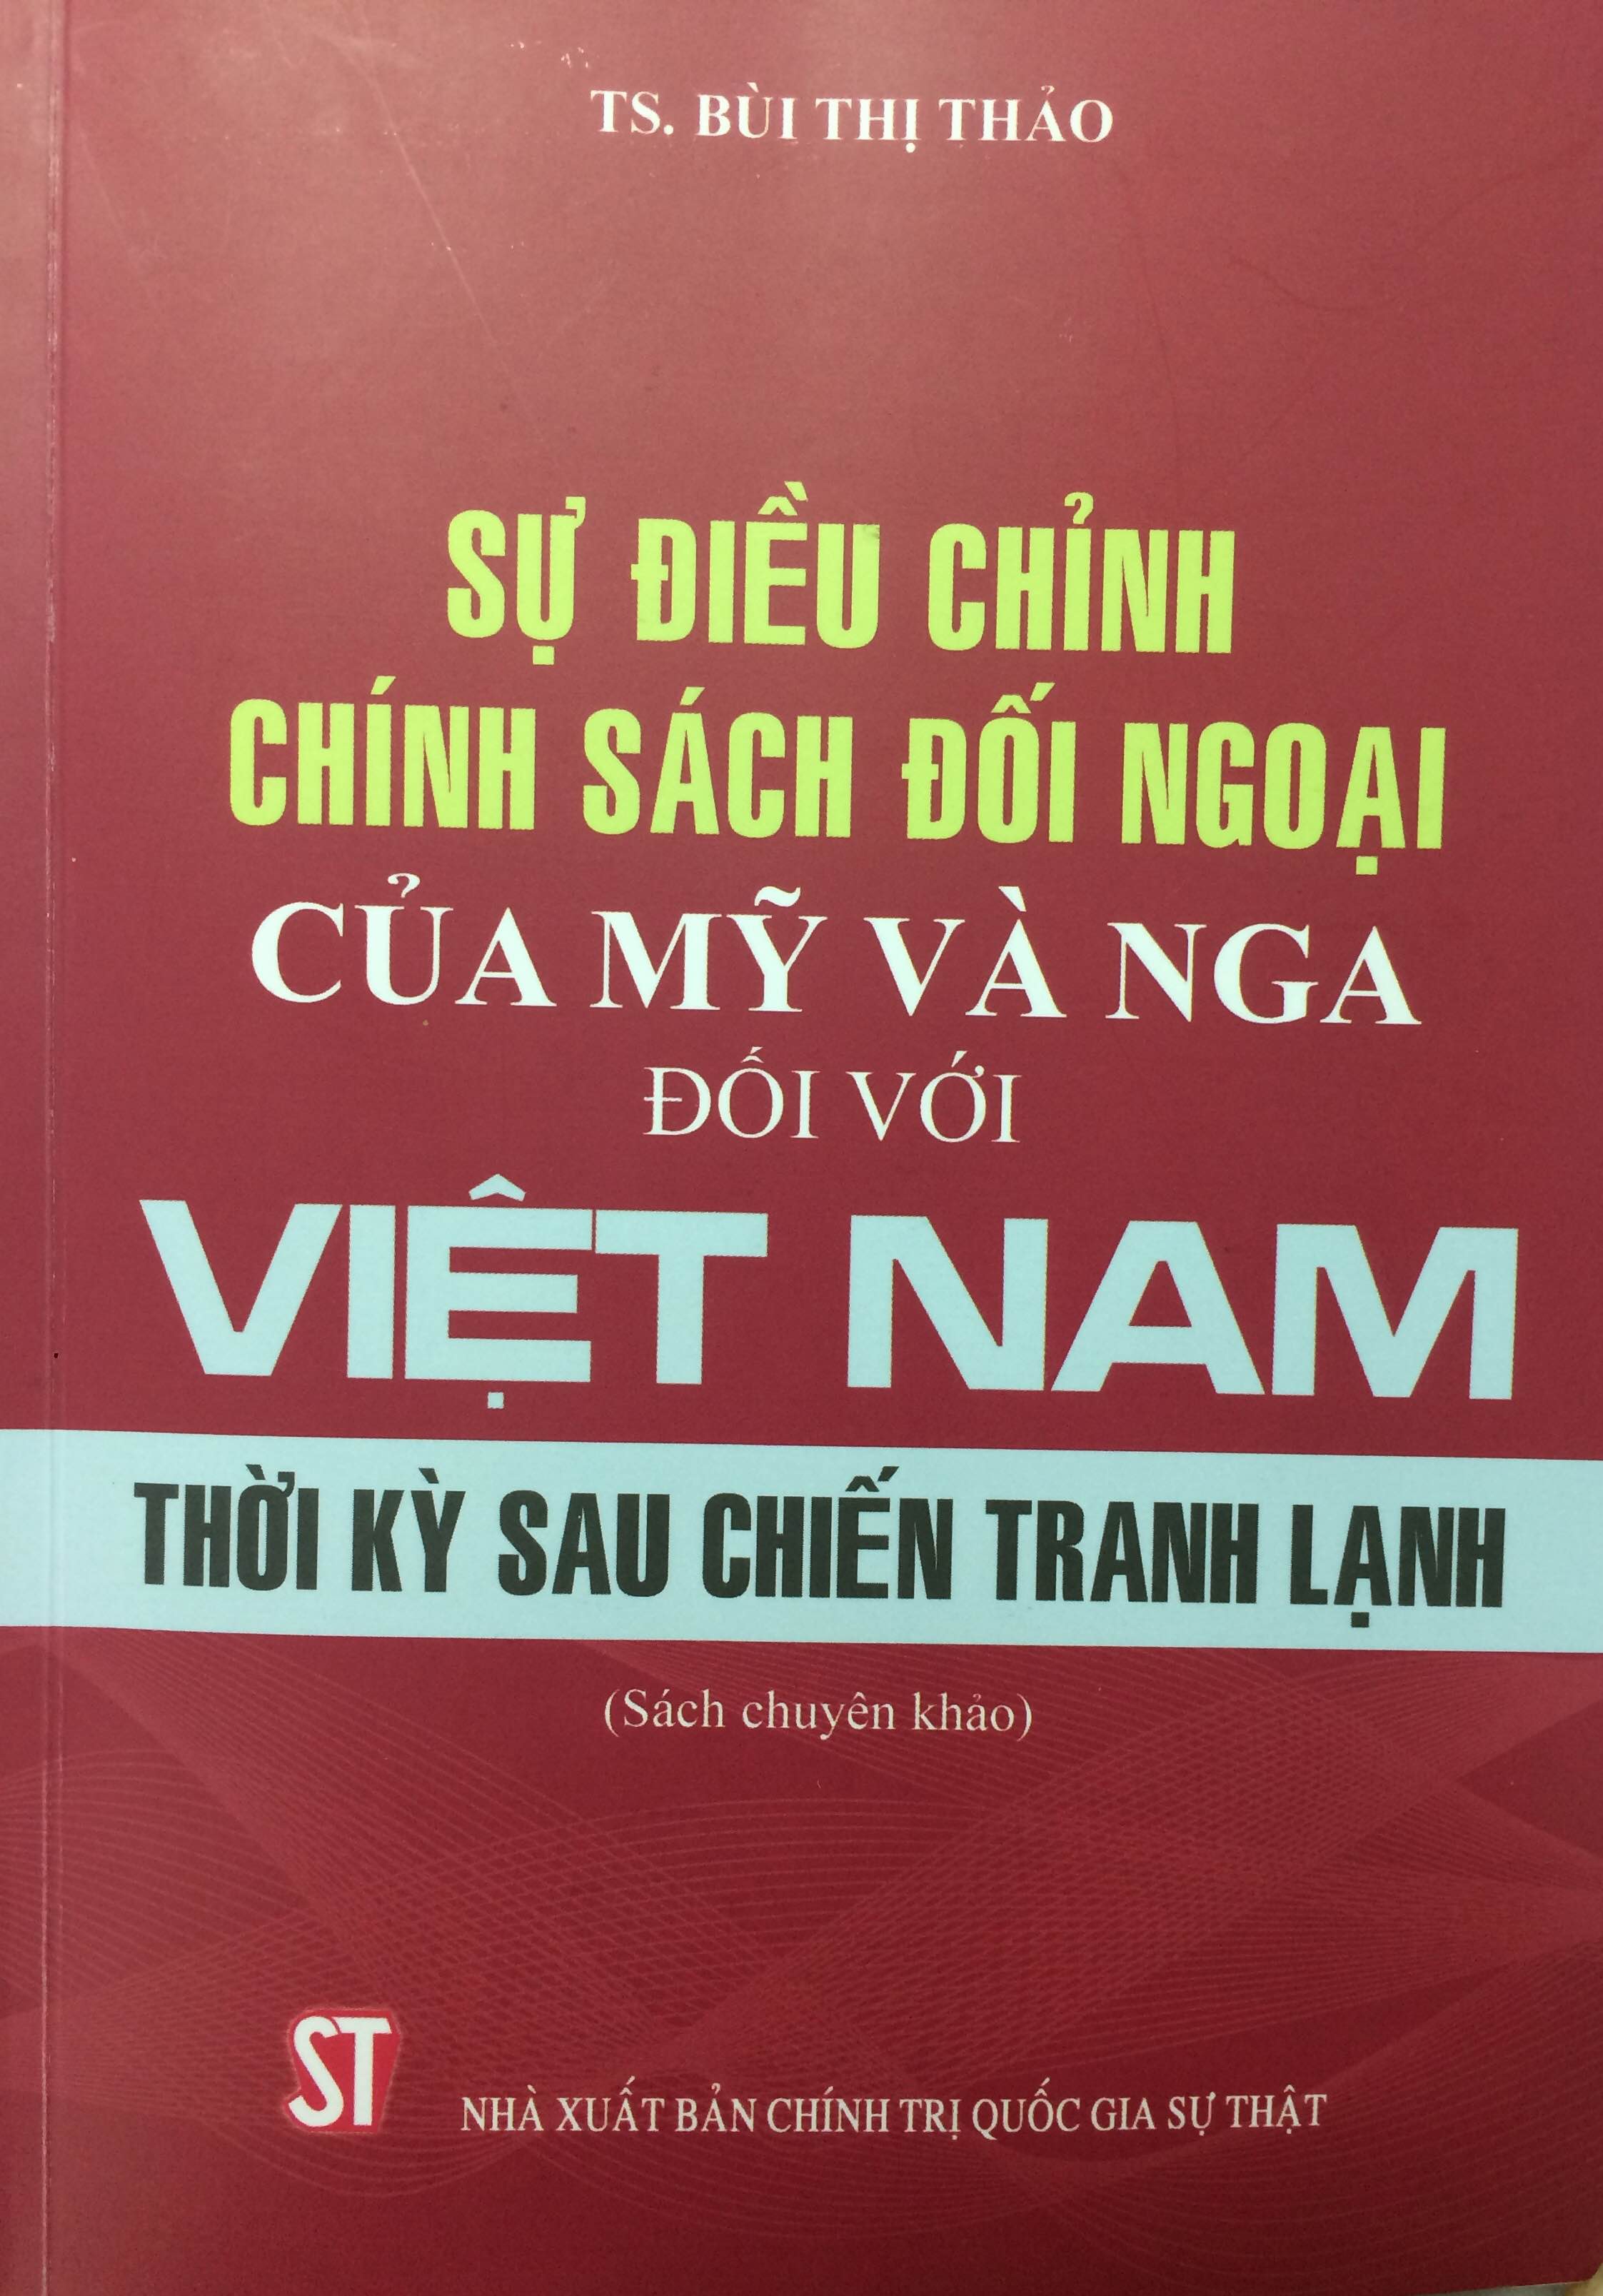 Sự điều chỉnh chính sách đối ngoại của Mỹ và Nga đối với Việt Nam thời kỳ sau Chiến tranh lạnh